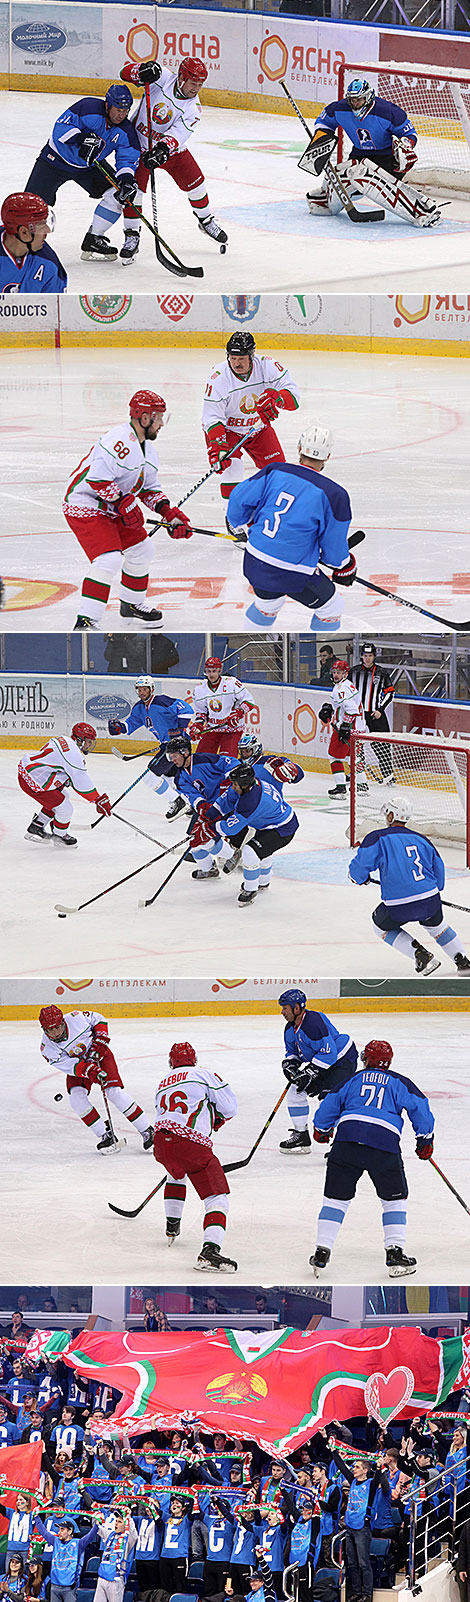 Команда Президента Беларуси победила сборную IIHF на Рождественском турнире